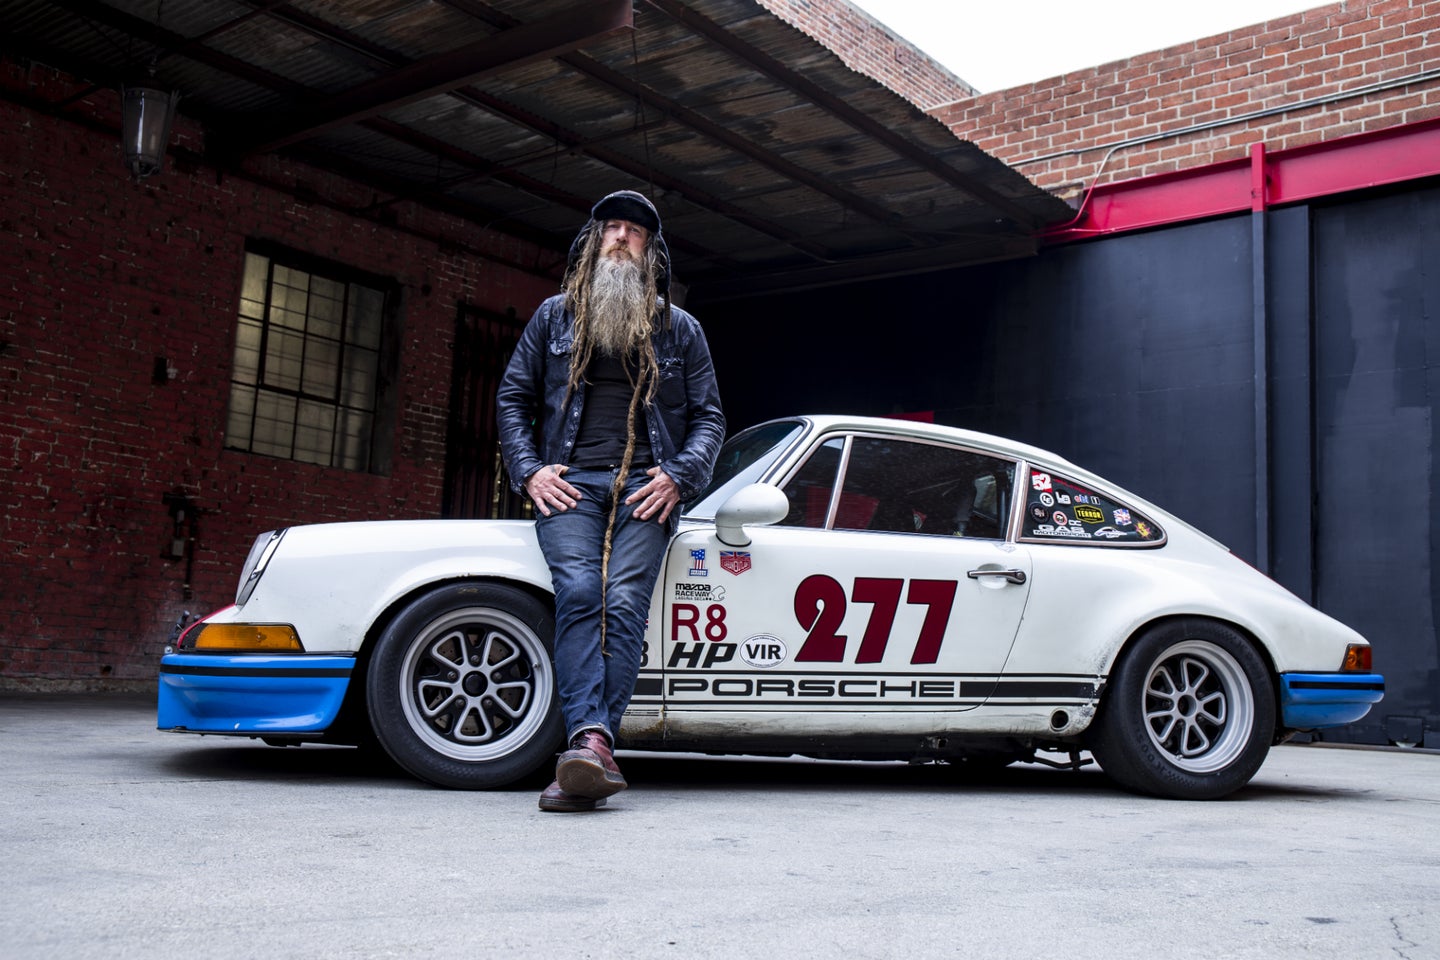 Mobile Racing Game CSR2 Releases Porsche Mini-Doc with Magnus Walker